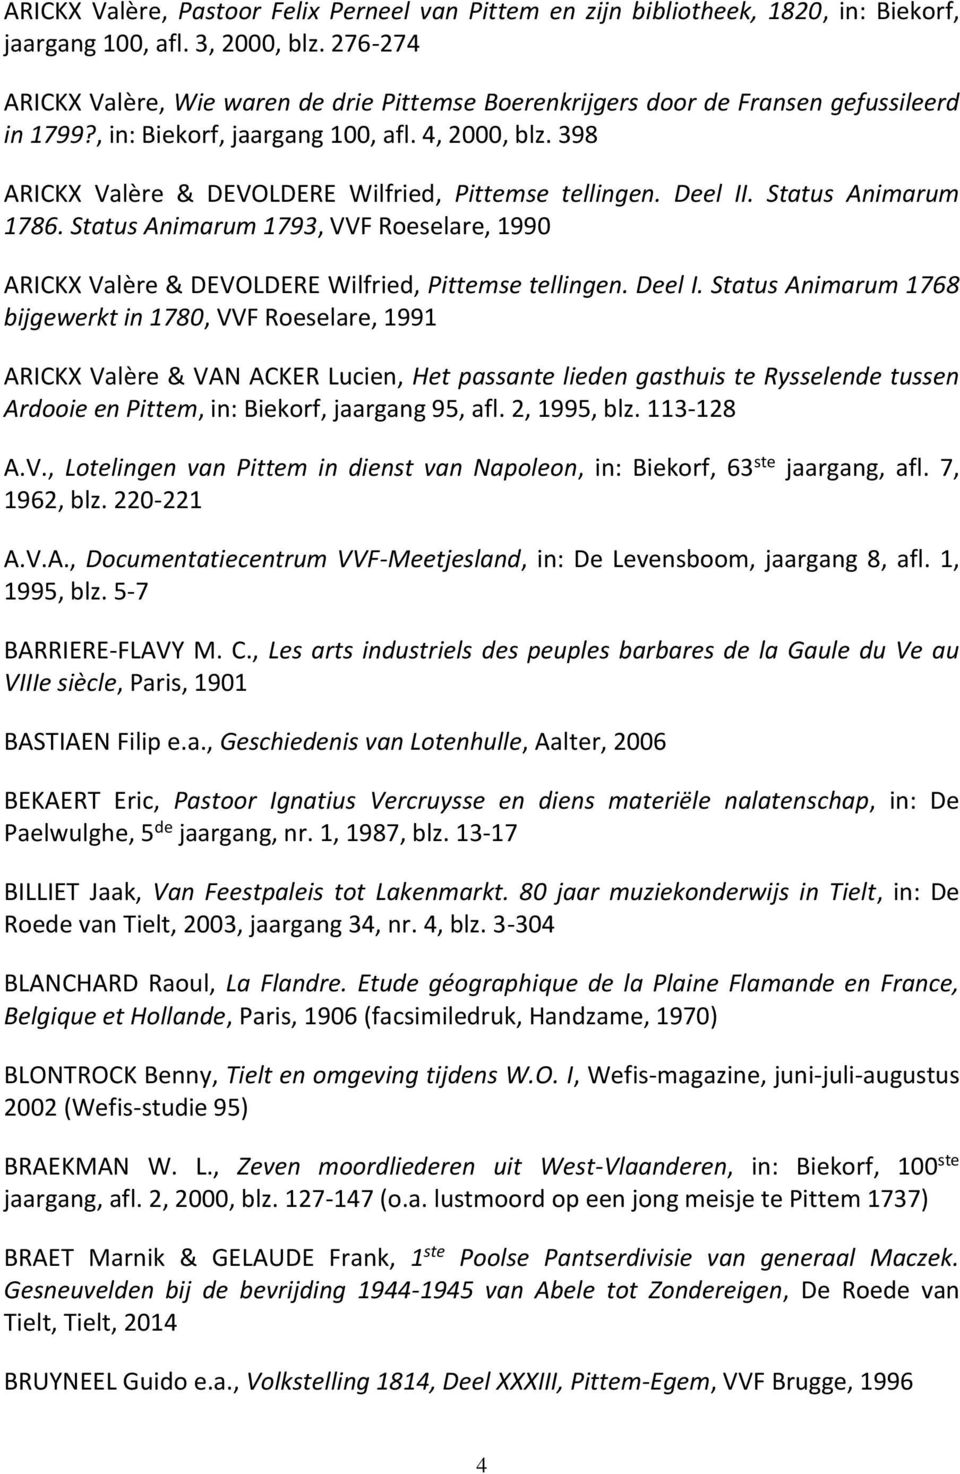 398 ARICKX Valère & DEVOLDERE Wilfried, Pittemse tellingen. Deel II